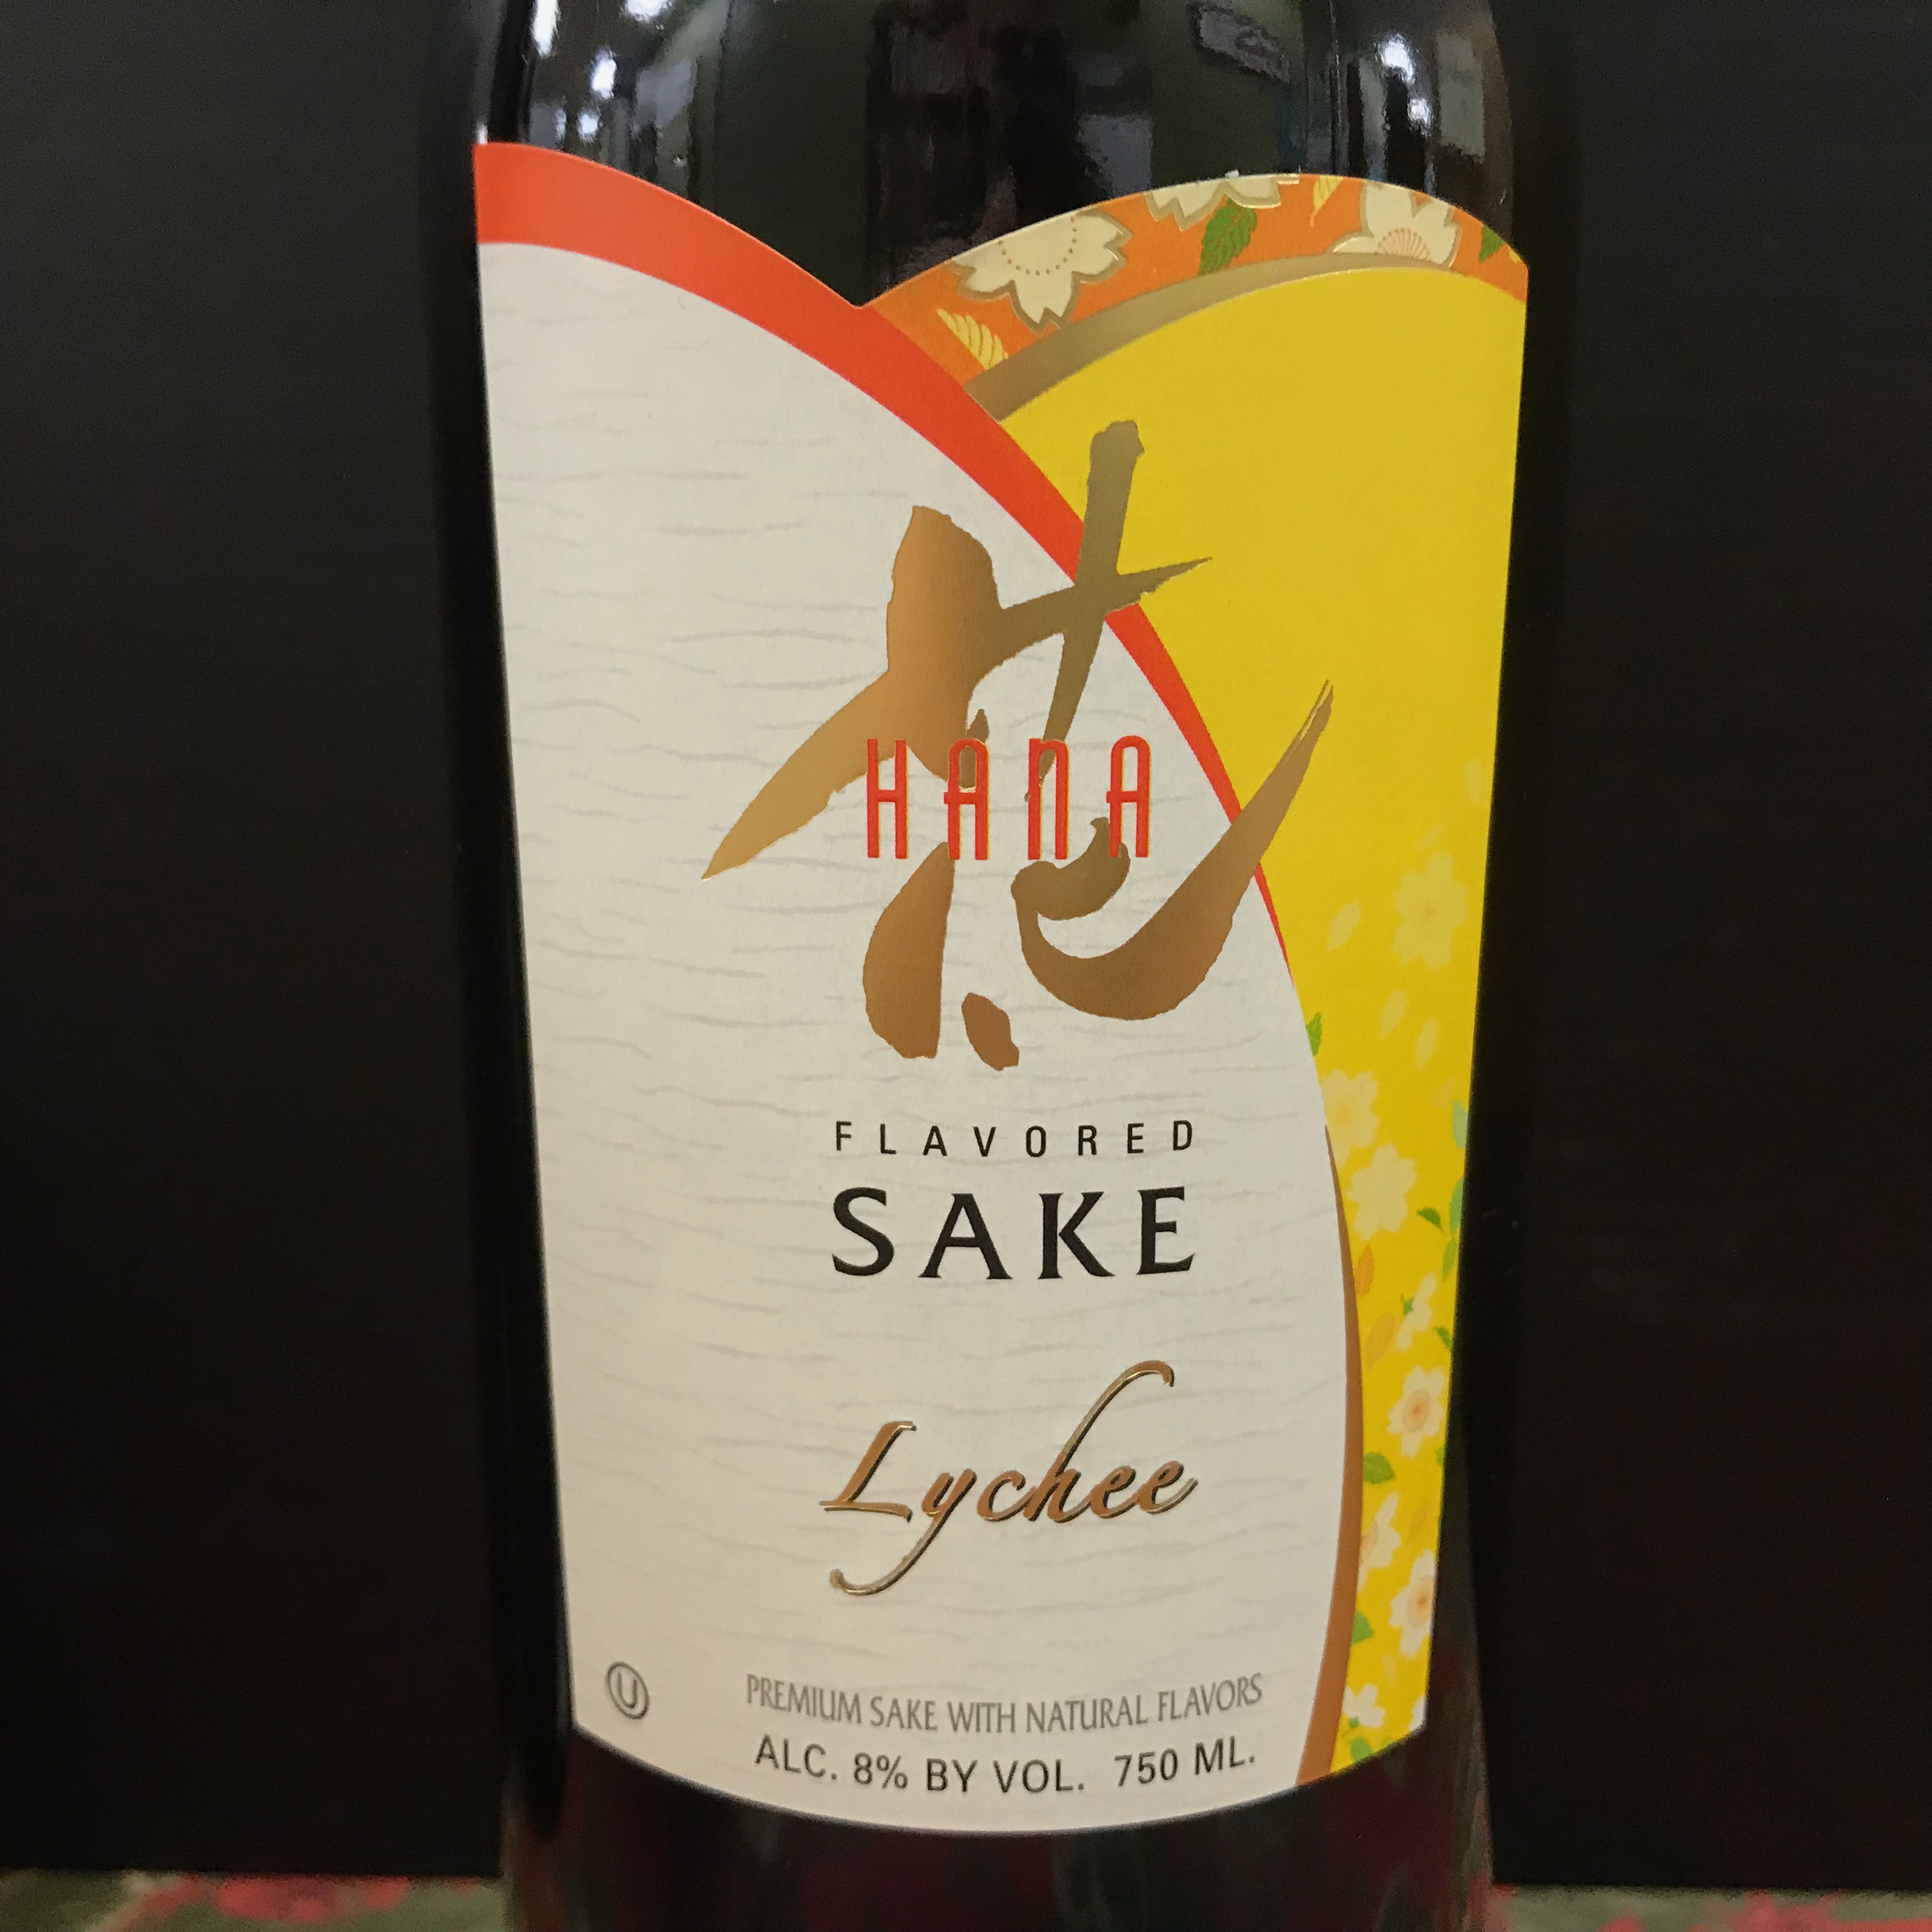 Hana Lychee flavored Sake 750 ml Kosher